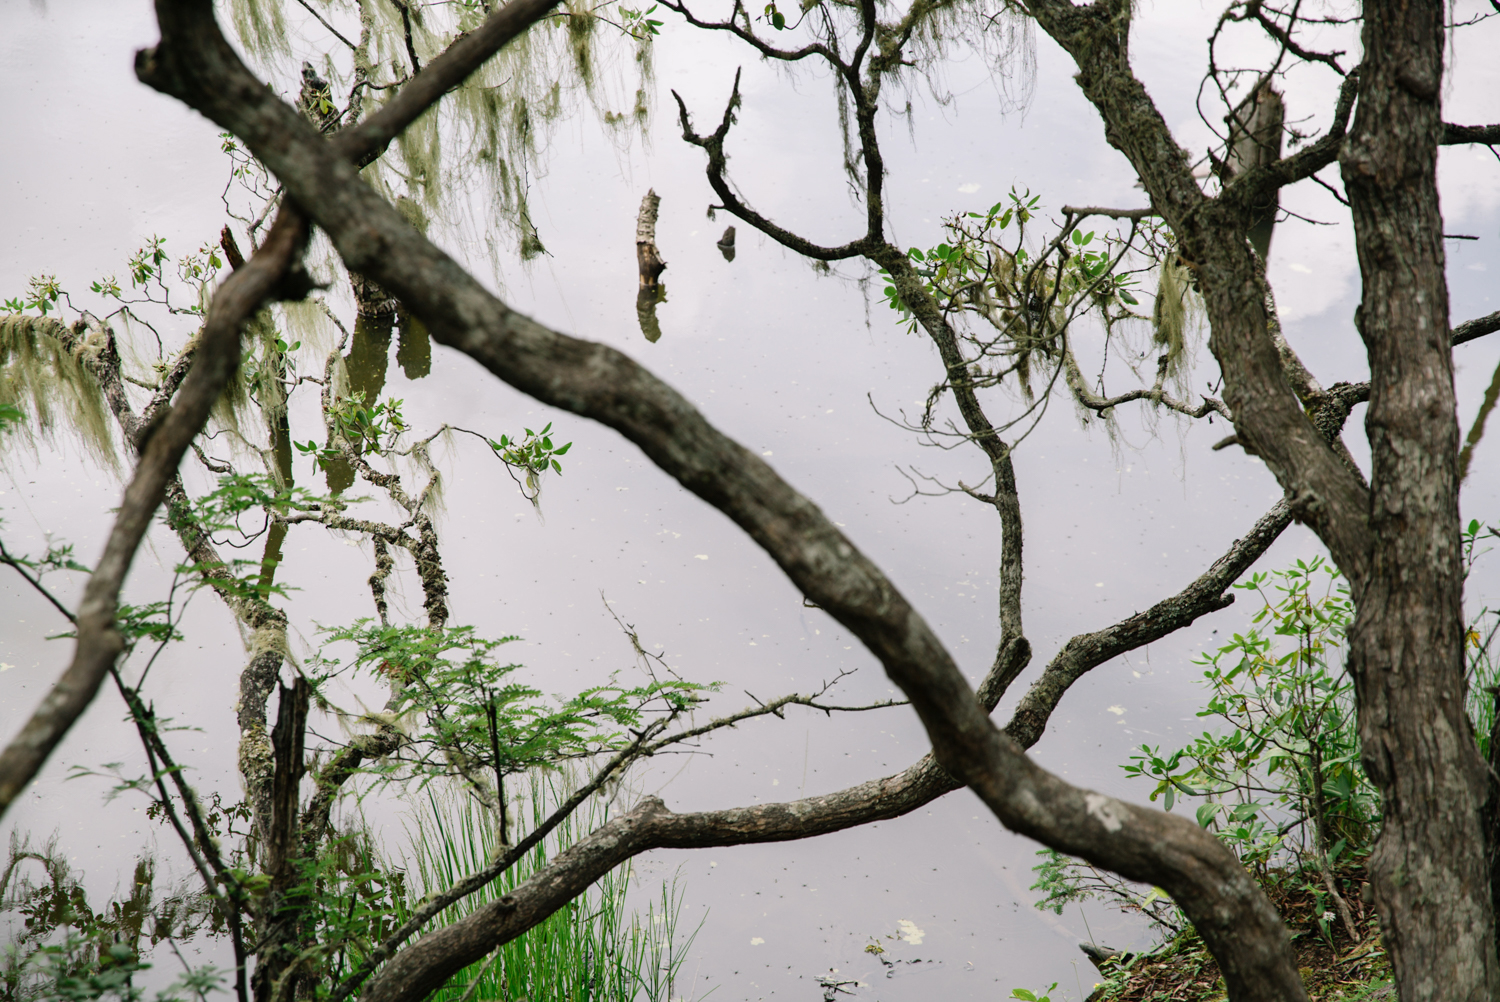 普达措国家公园属都湖畔，每棵树上都挂着丝状淡绿色的寄生植物松萝，因当地人认为只会在空气质量极为良好的环境下生长，所以它也被称为环境监测计。